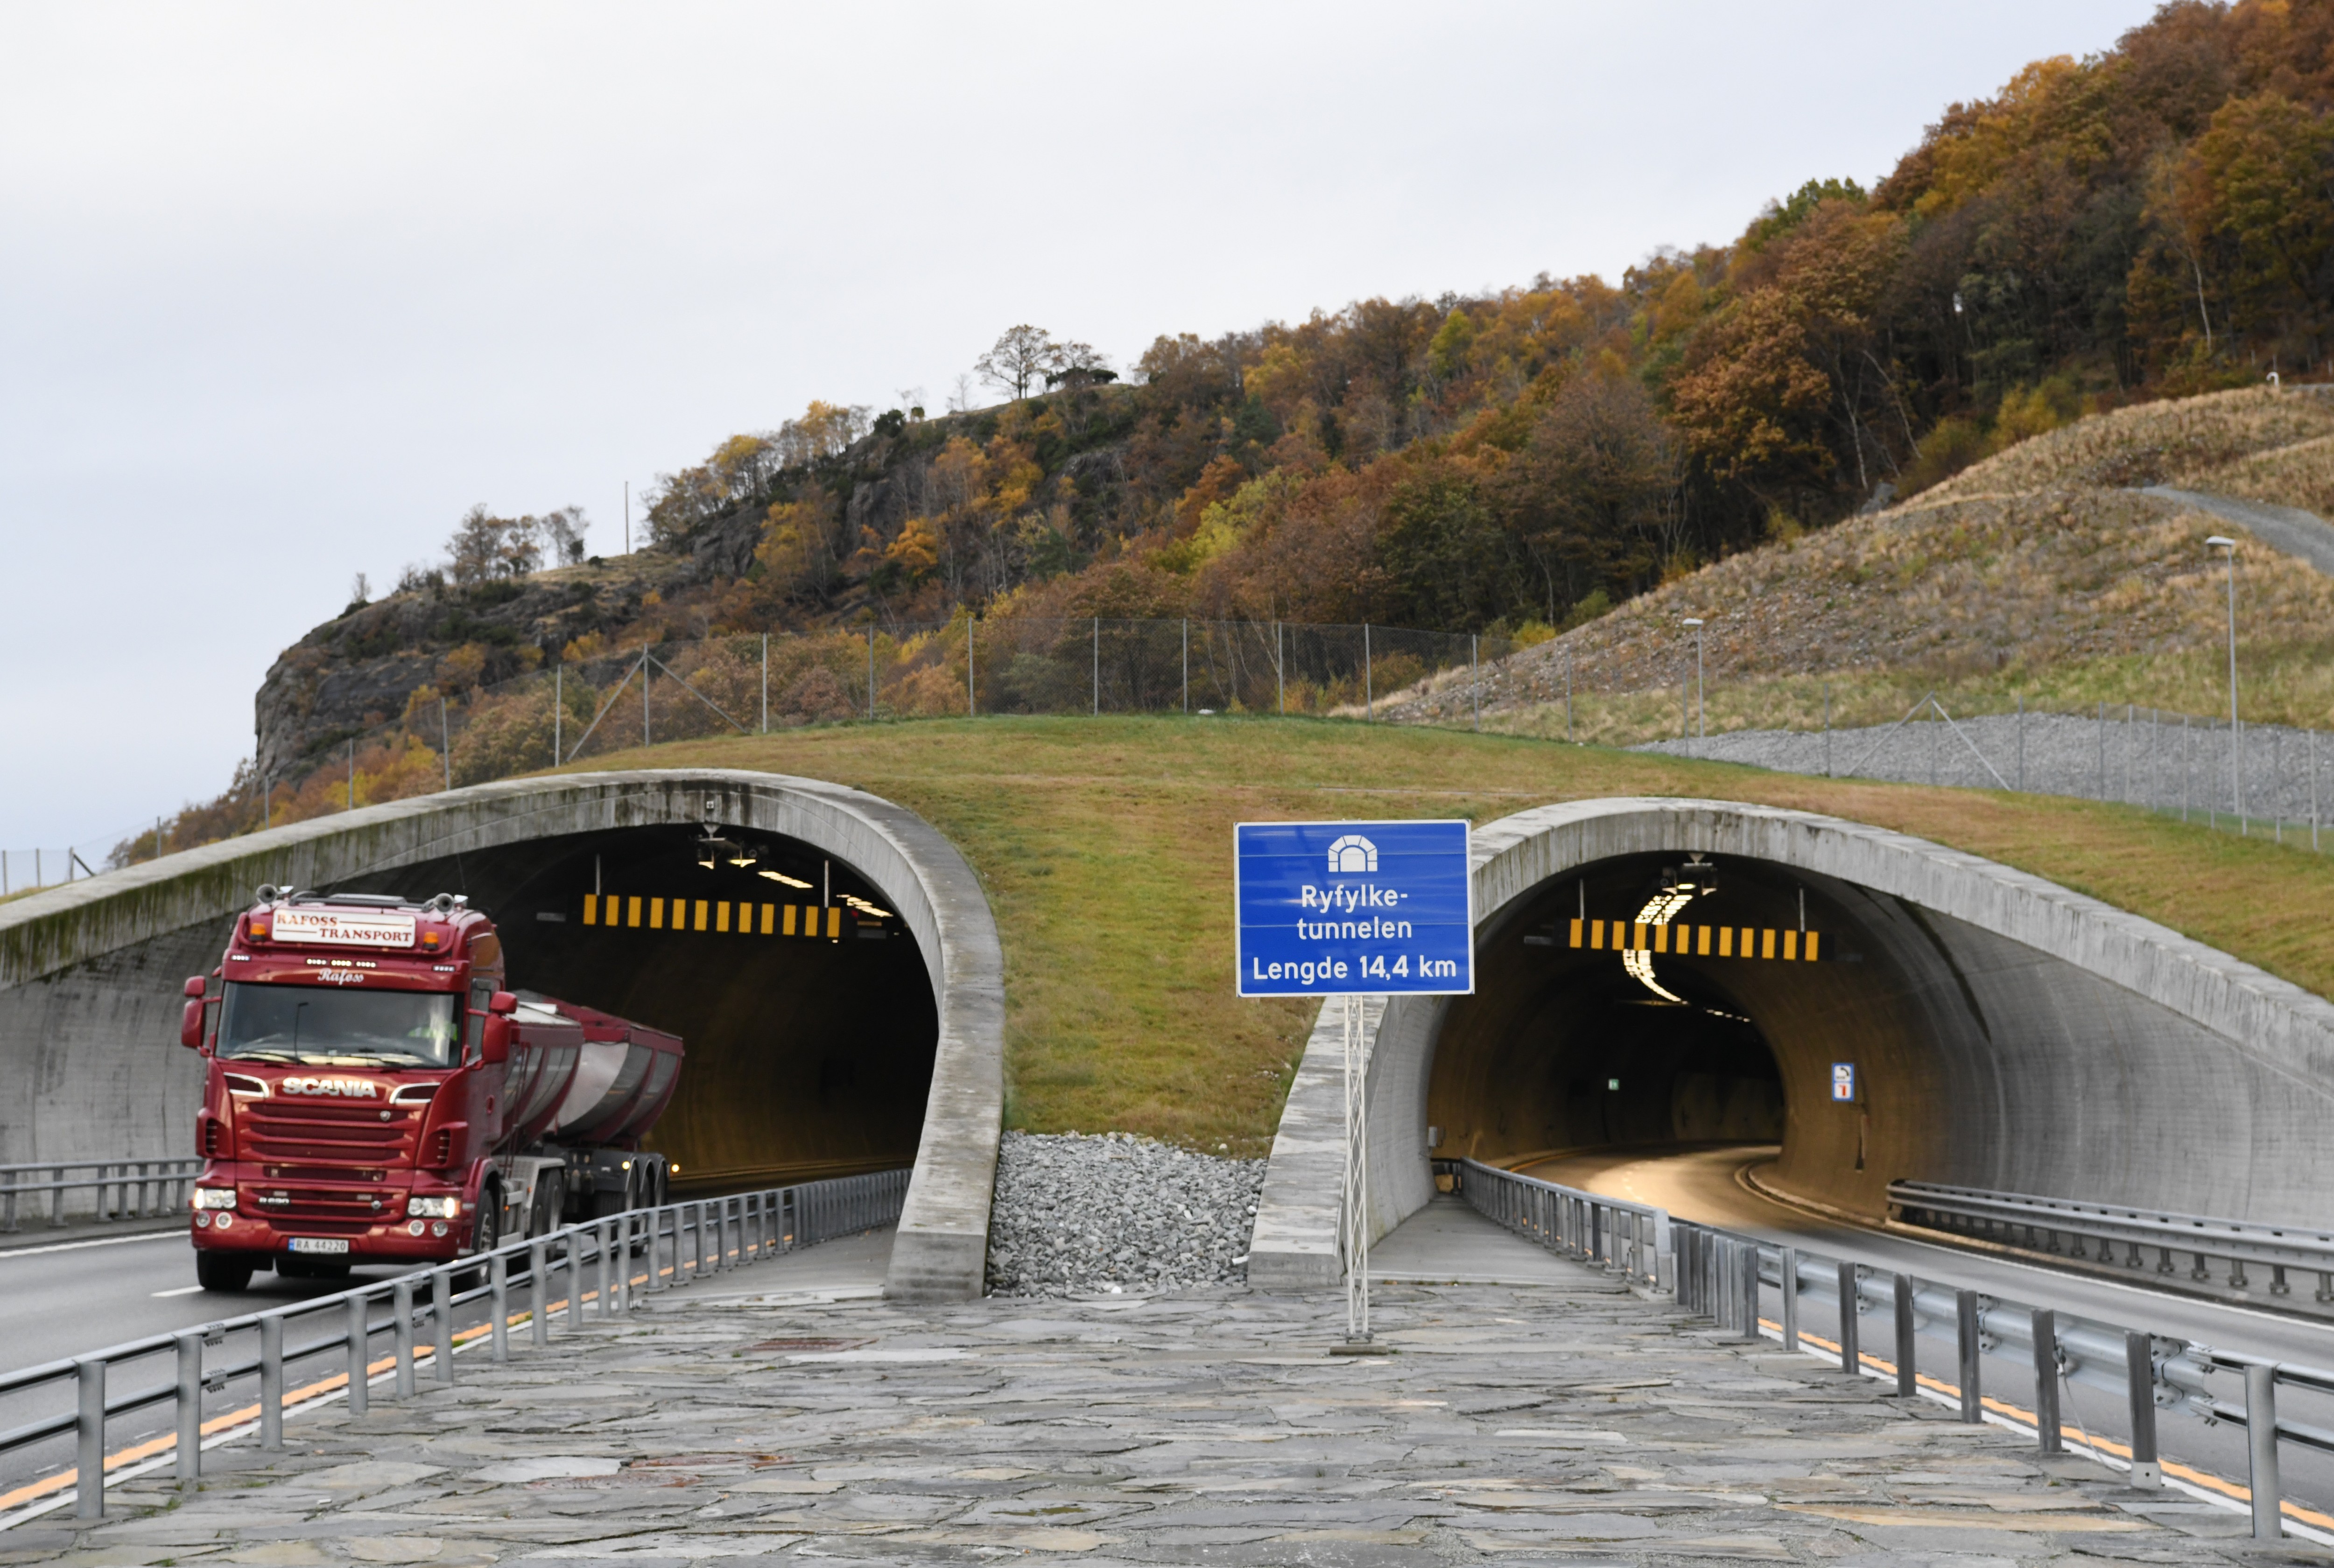 Ryfylketunnelen połączył Ryfylke ze Stavanger. Nowy obiekt uznawany jest za cud techniki - jest najgłębiej położonym oraz najdłuższym podwodnym tunelem autostradowym na świecie - ma 14,4 km długości.